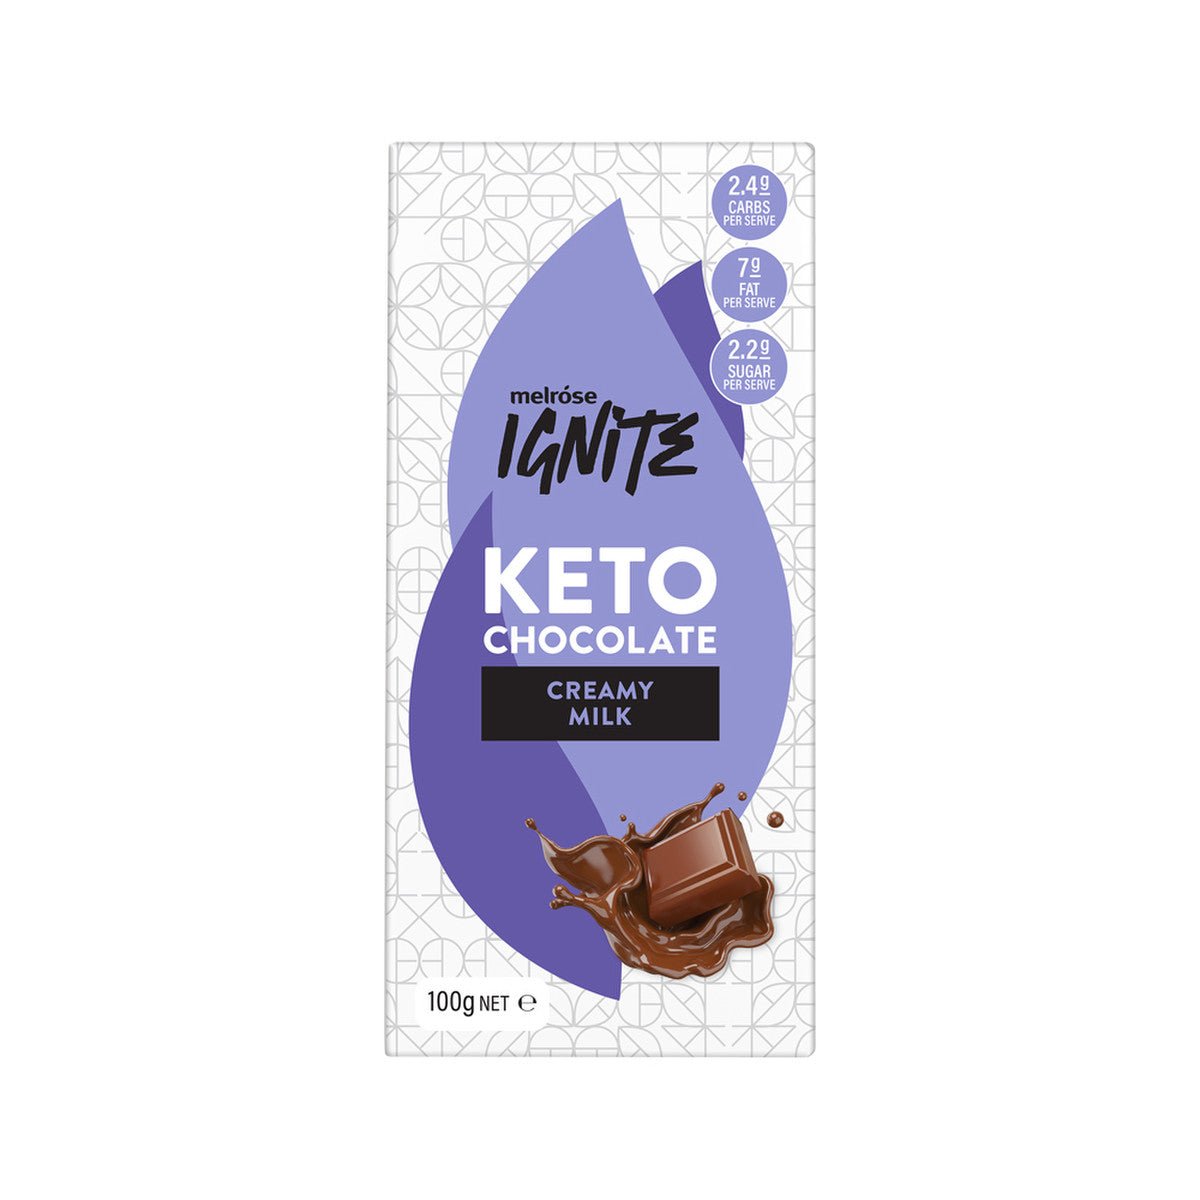 Keto Chocolate - Creamy Milk - 100g - Yo Keto